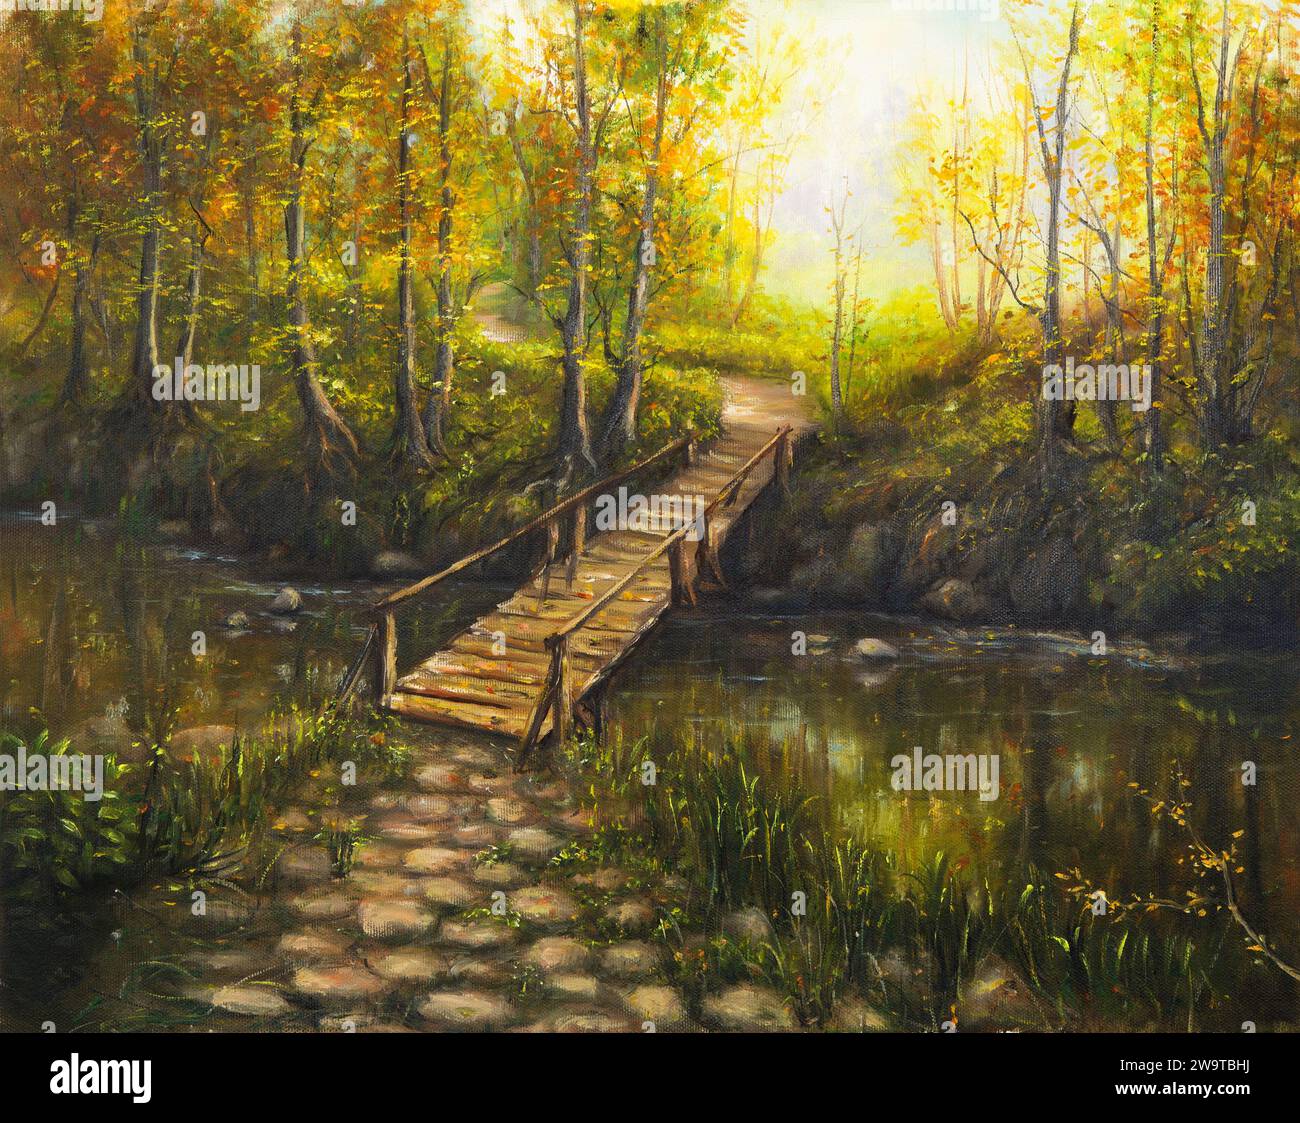 Peinture à l'huile originale de beautifl paysage d'automne, forêt, montagnes et rivière avec pont en bois sur canvas.Modern Impressionnisme, modernisme, marinis Banque D'Images